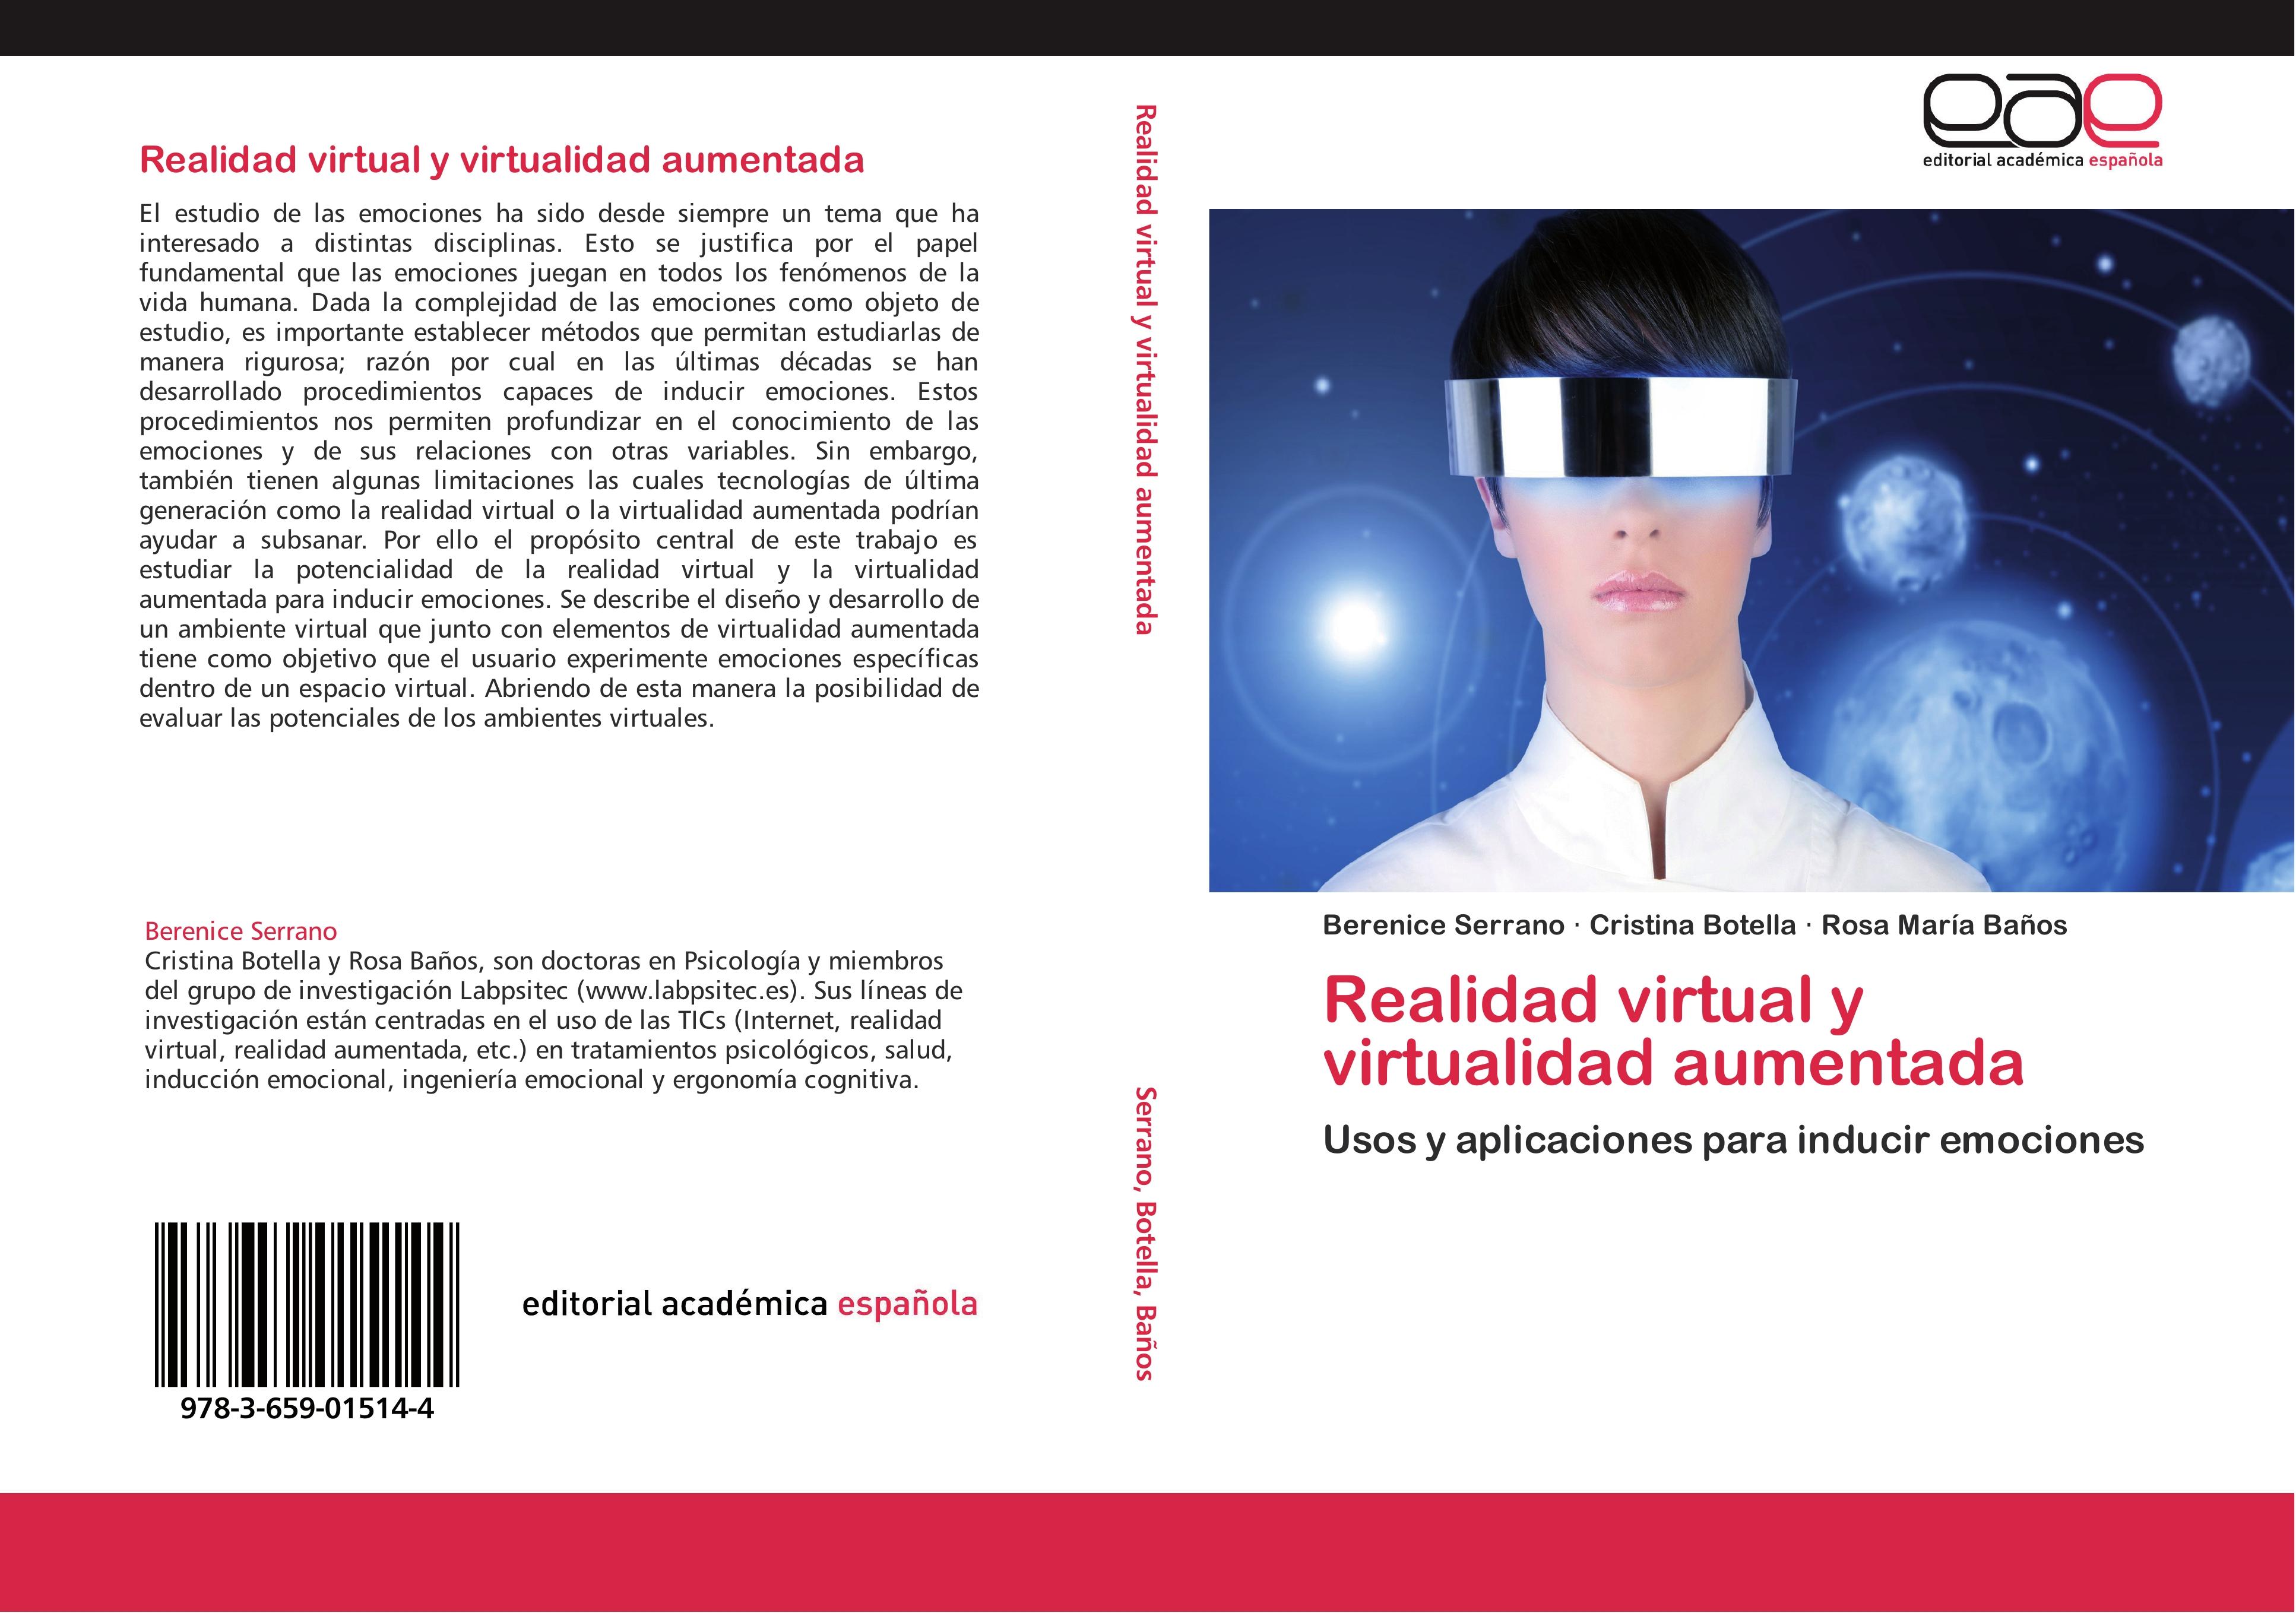 Realidad virtual y virtualidad aumentada - Berenice Serrano|Cristina Botella|Rosa María Baños